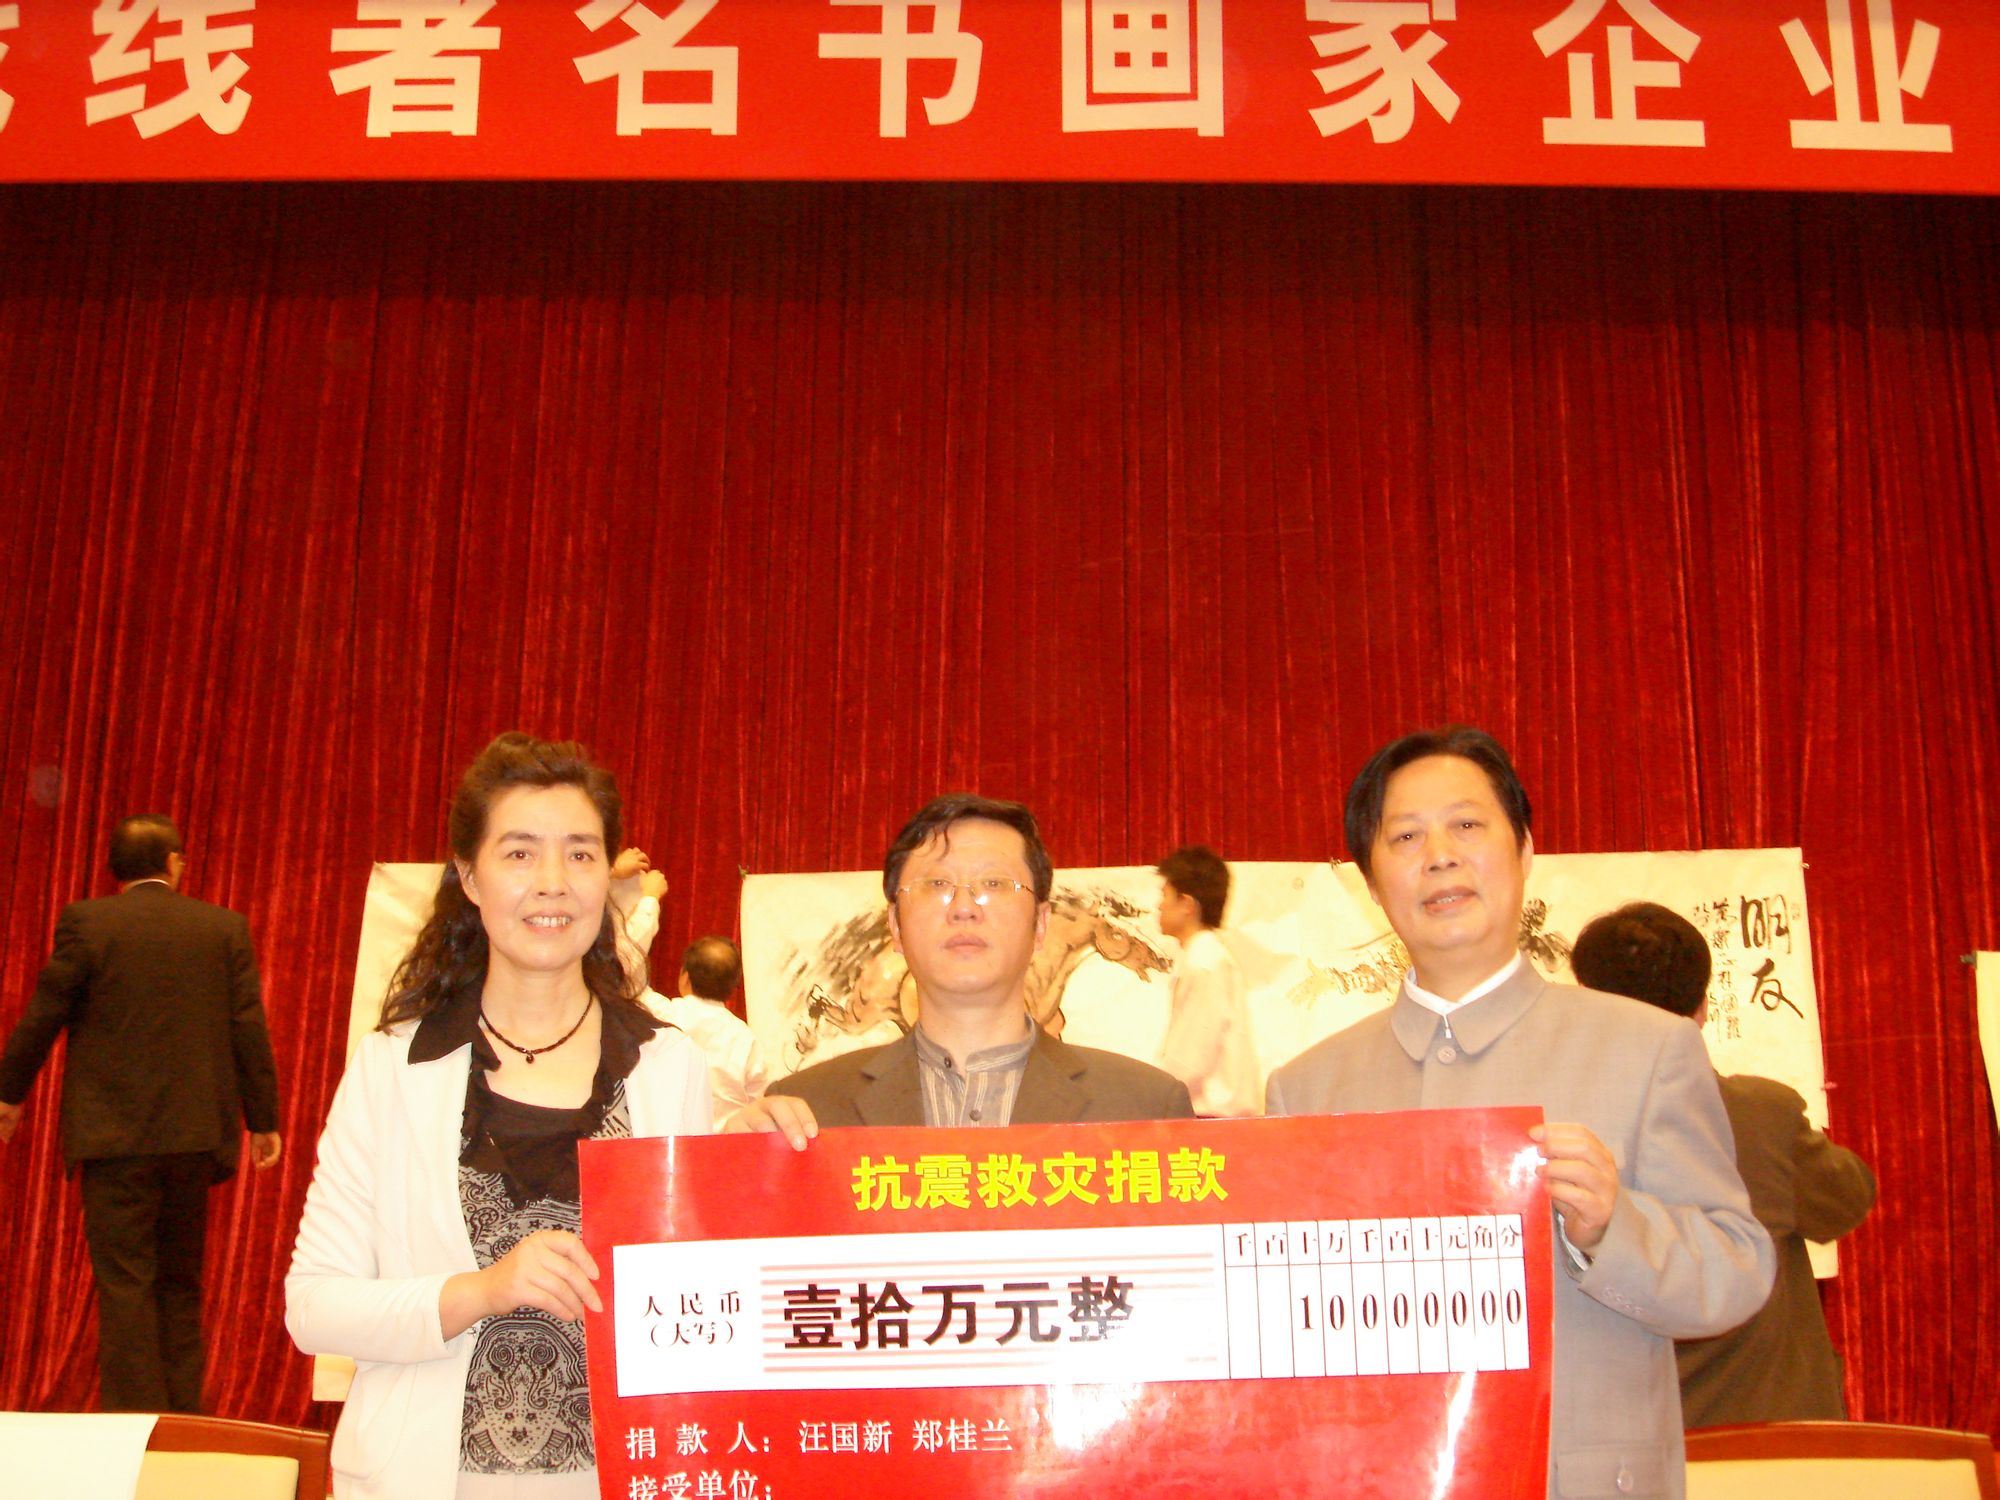 2008年汪先生與夫人鄭桂蘭為災區捐款10萬元